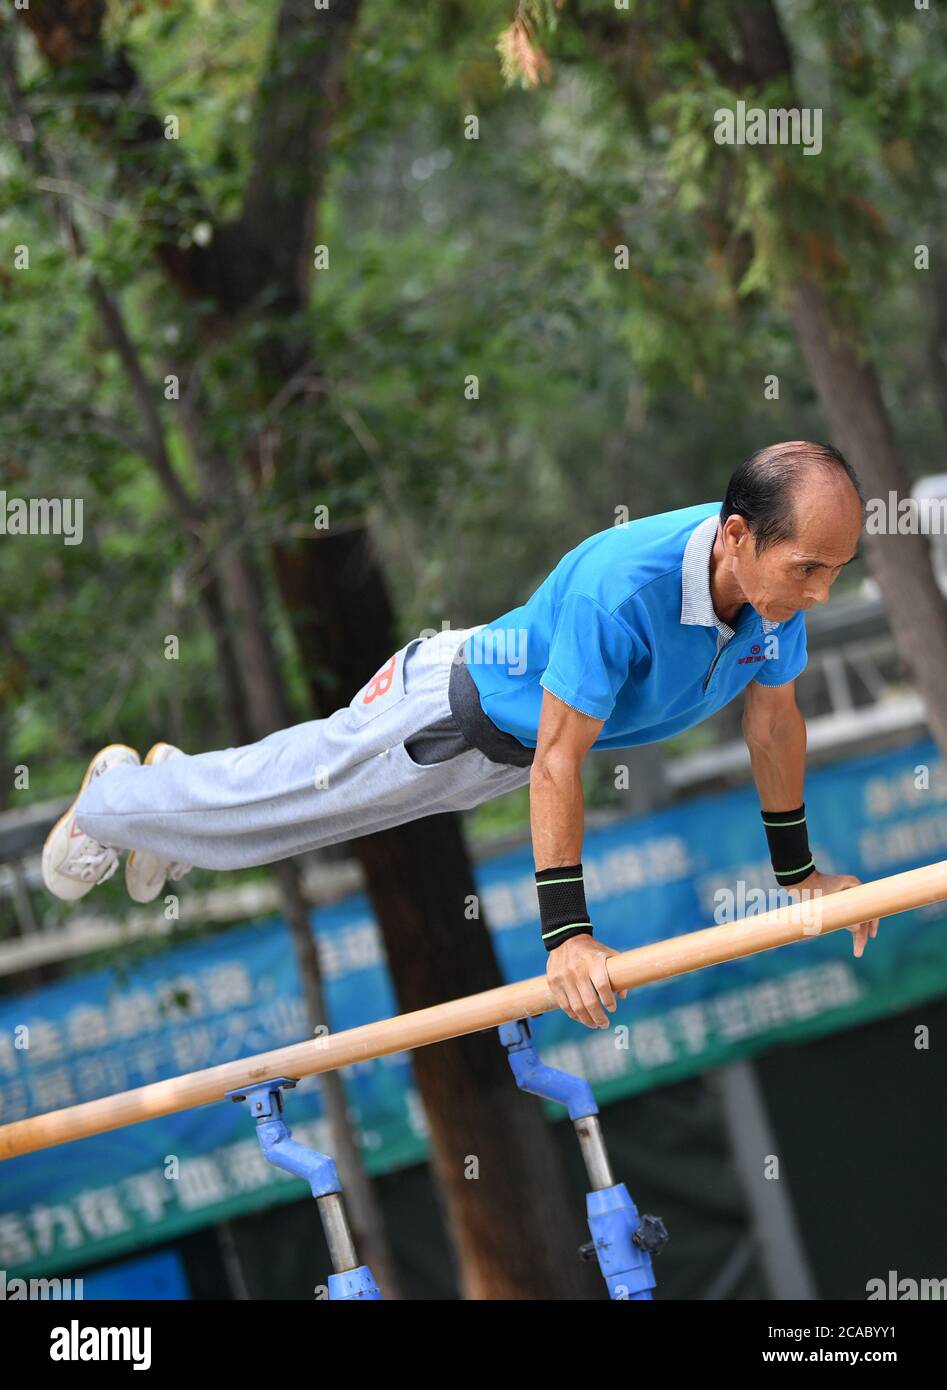 (200806) -- TIANJIN, le 6 août 2020 (Xinhua) -- mi Yanqing, 71 ans, pratique la gymnastique au parc Xigu, dans le nord de la Chine, Tianjin, le 4 août 2020. Un groupe de personnes âgées a formé une équipe de gymnastique à Tianjin il y a dix ans. Ils ont pratiqué régulièrement comme exercice physique quotidien. L'équipe compte maintenant plus de 20 membres, avec une moyenne d'âge de 68 ans. « l'exercice nous permet de maintenir un bon état physique, ce qui est très utile pour améliorer la qualité de vie. » a déclaré Tong Yugen, le chef d'équipe âgé de 66 ans. Au fur et à mesure que l'équipe devient plus connue, plus de 100 amateurs de fitness les ont rejoints dans l'exercice quotidien. Banque D'Images